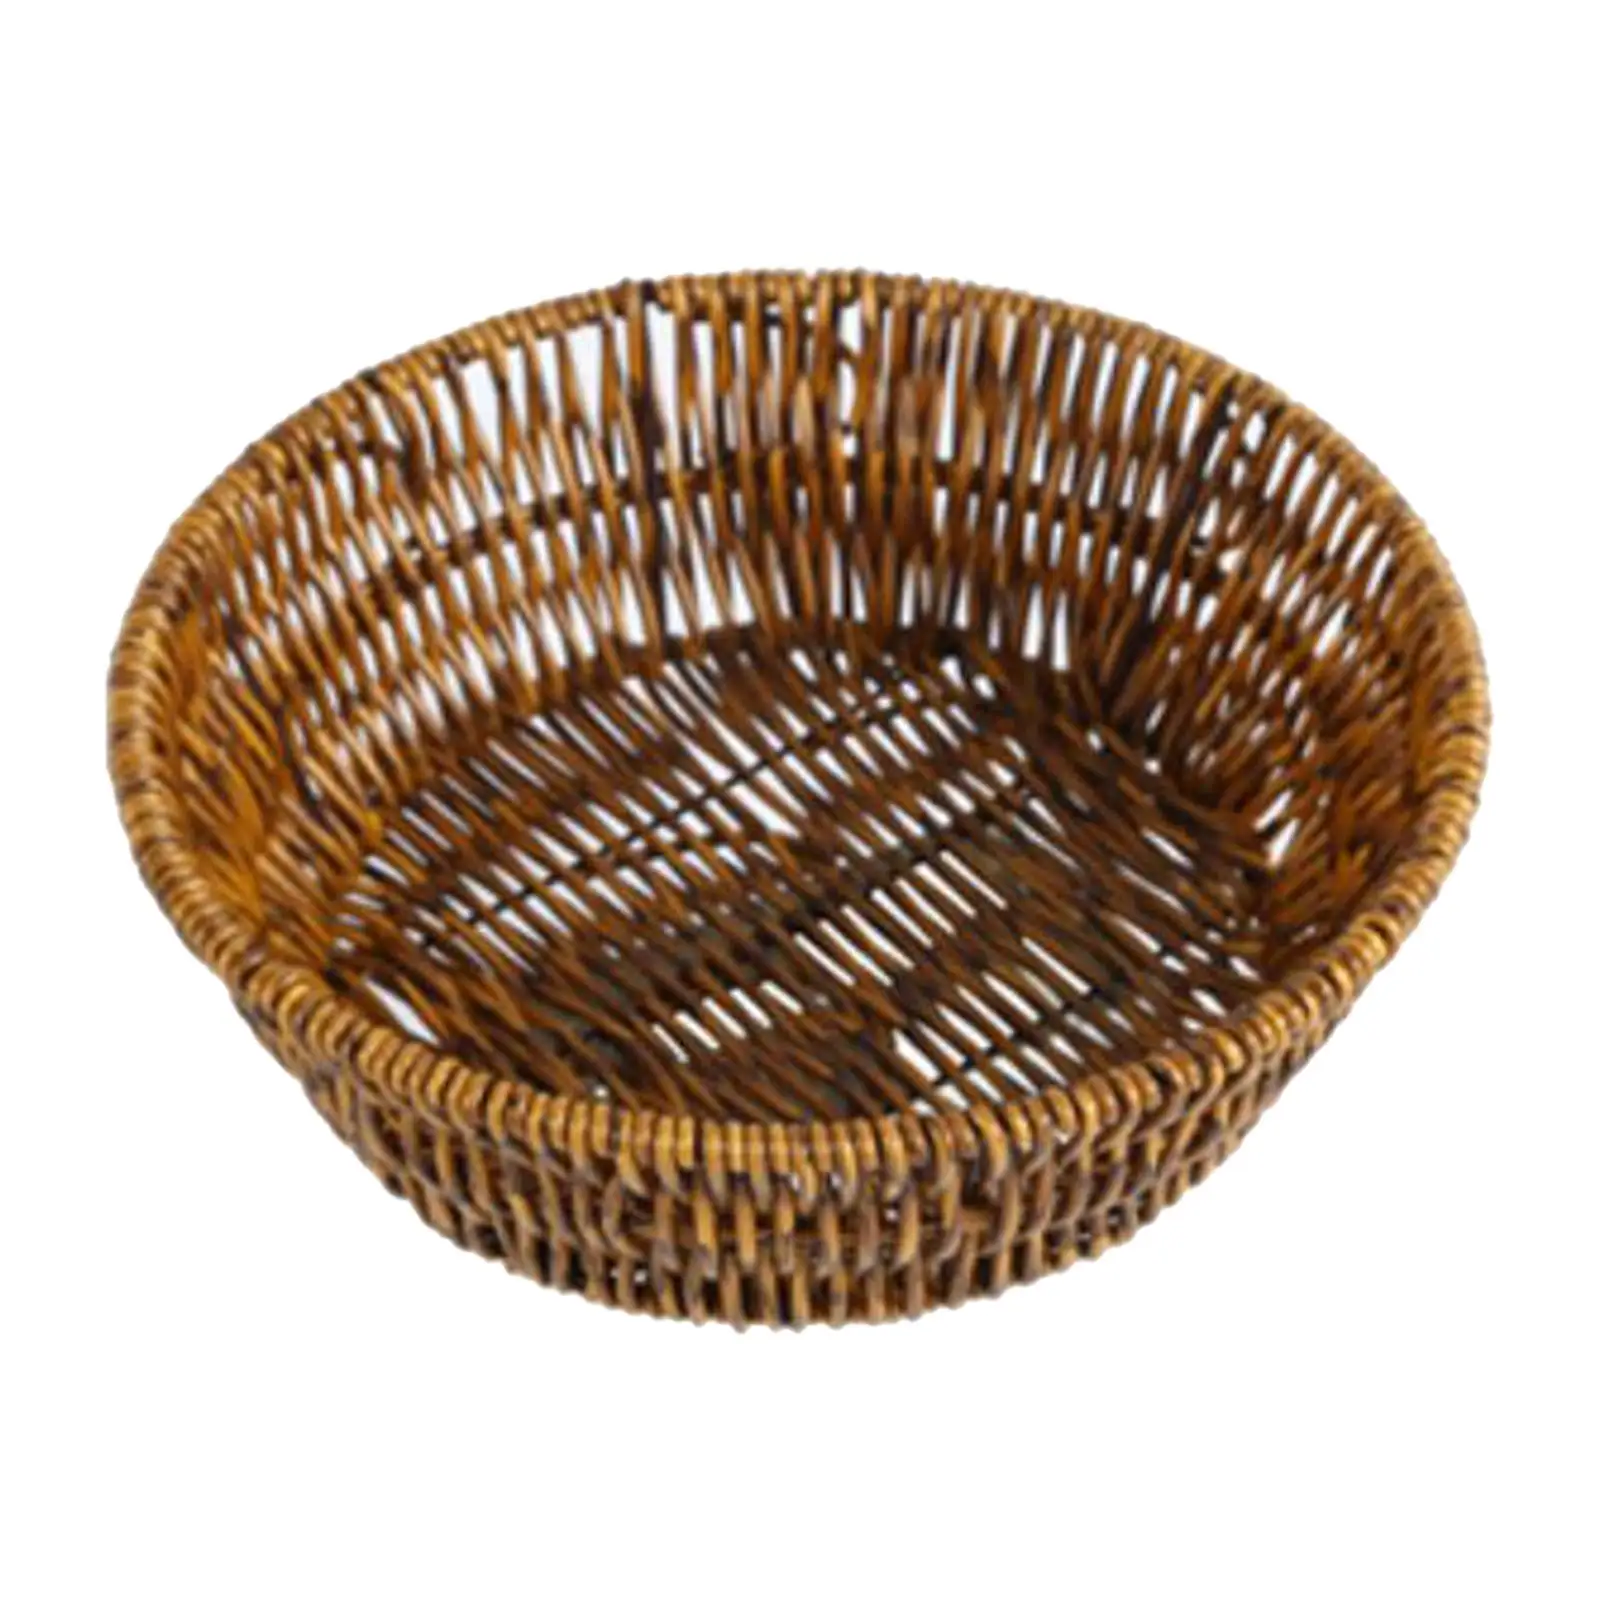 Fruit Basket Vegetables Basket Imitation Rattan Smooth Edges for Storing Bread, Snacks and Crafts Storage Basket Handmade